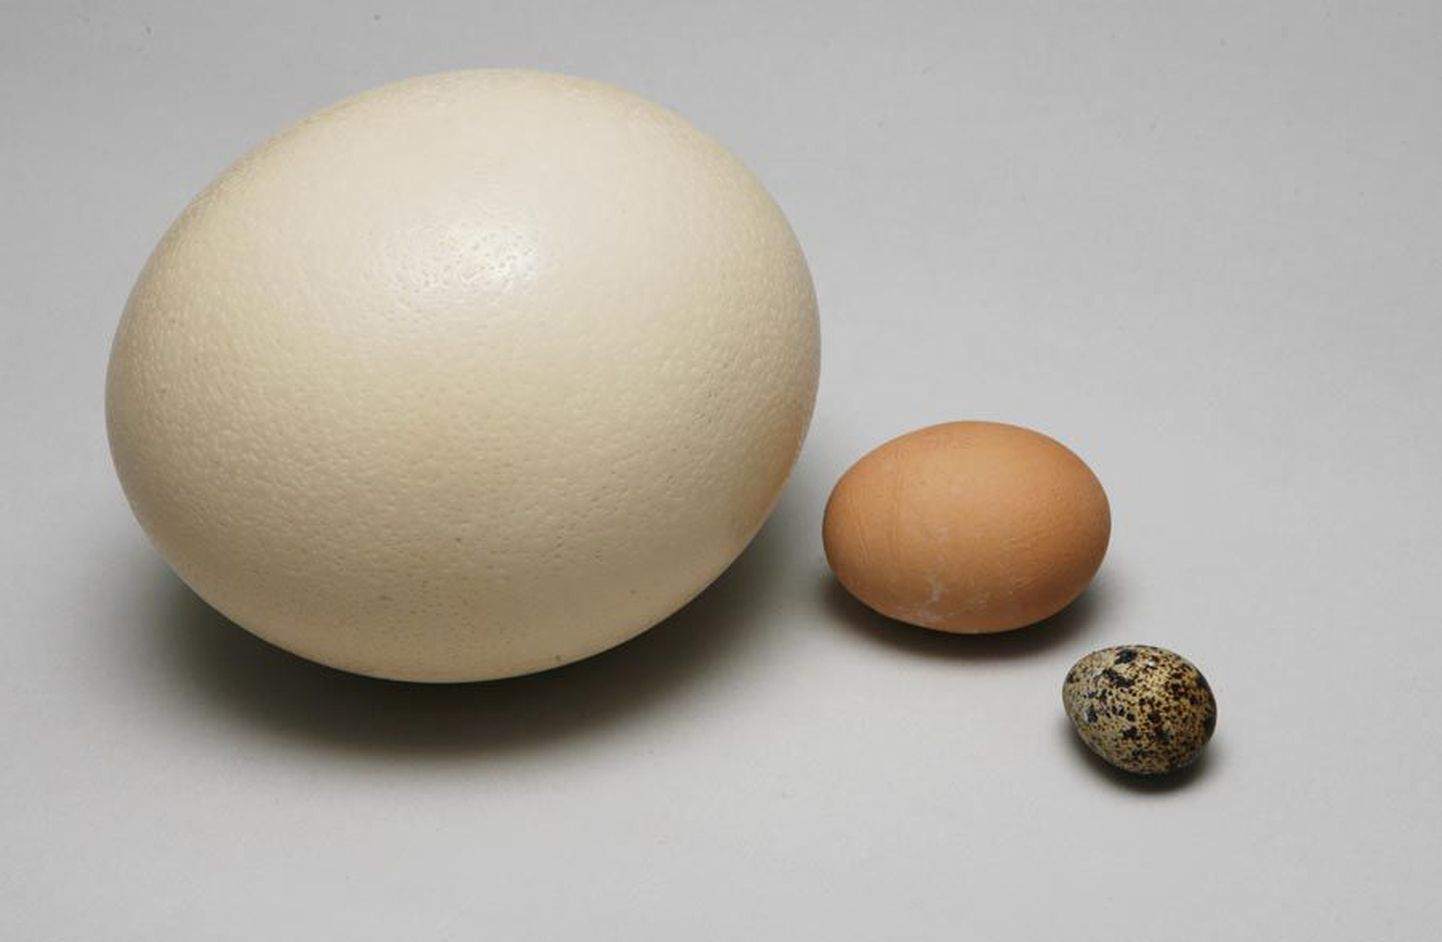 Munal on palju tervistavaid omadusi. Täisväärtuslikke vabalt peetud kanade mune saab Viljandis kõige lihtsamalt kätte toiduvõrgustiku OTT aidast.